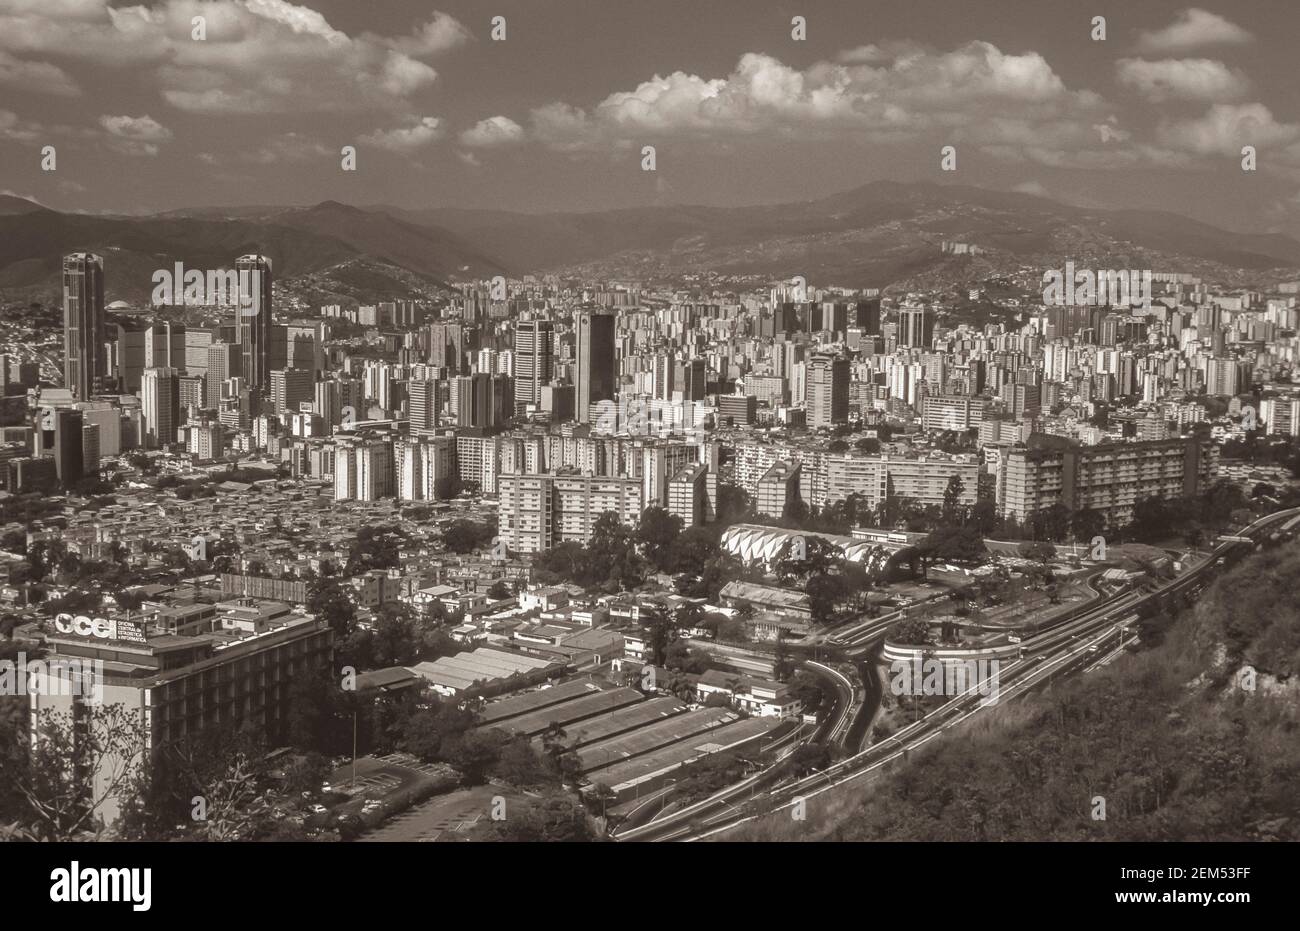 CARACAS, VENEZUELA, 1988 - Aerial view of central Caracas. Stock Photo